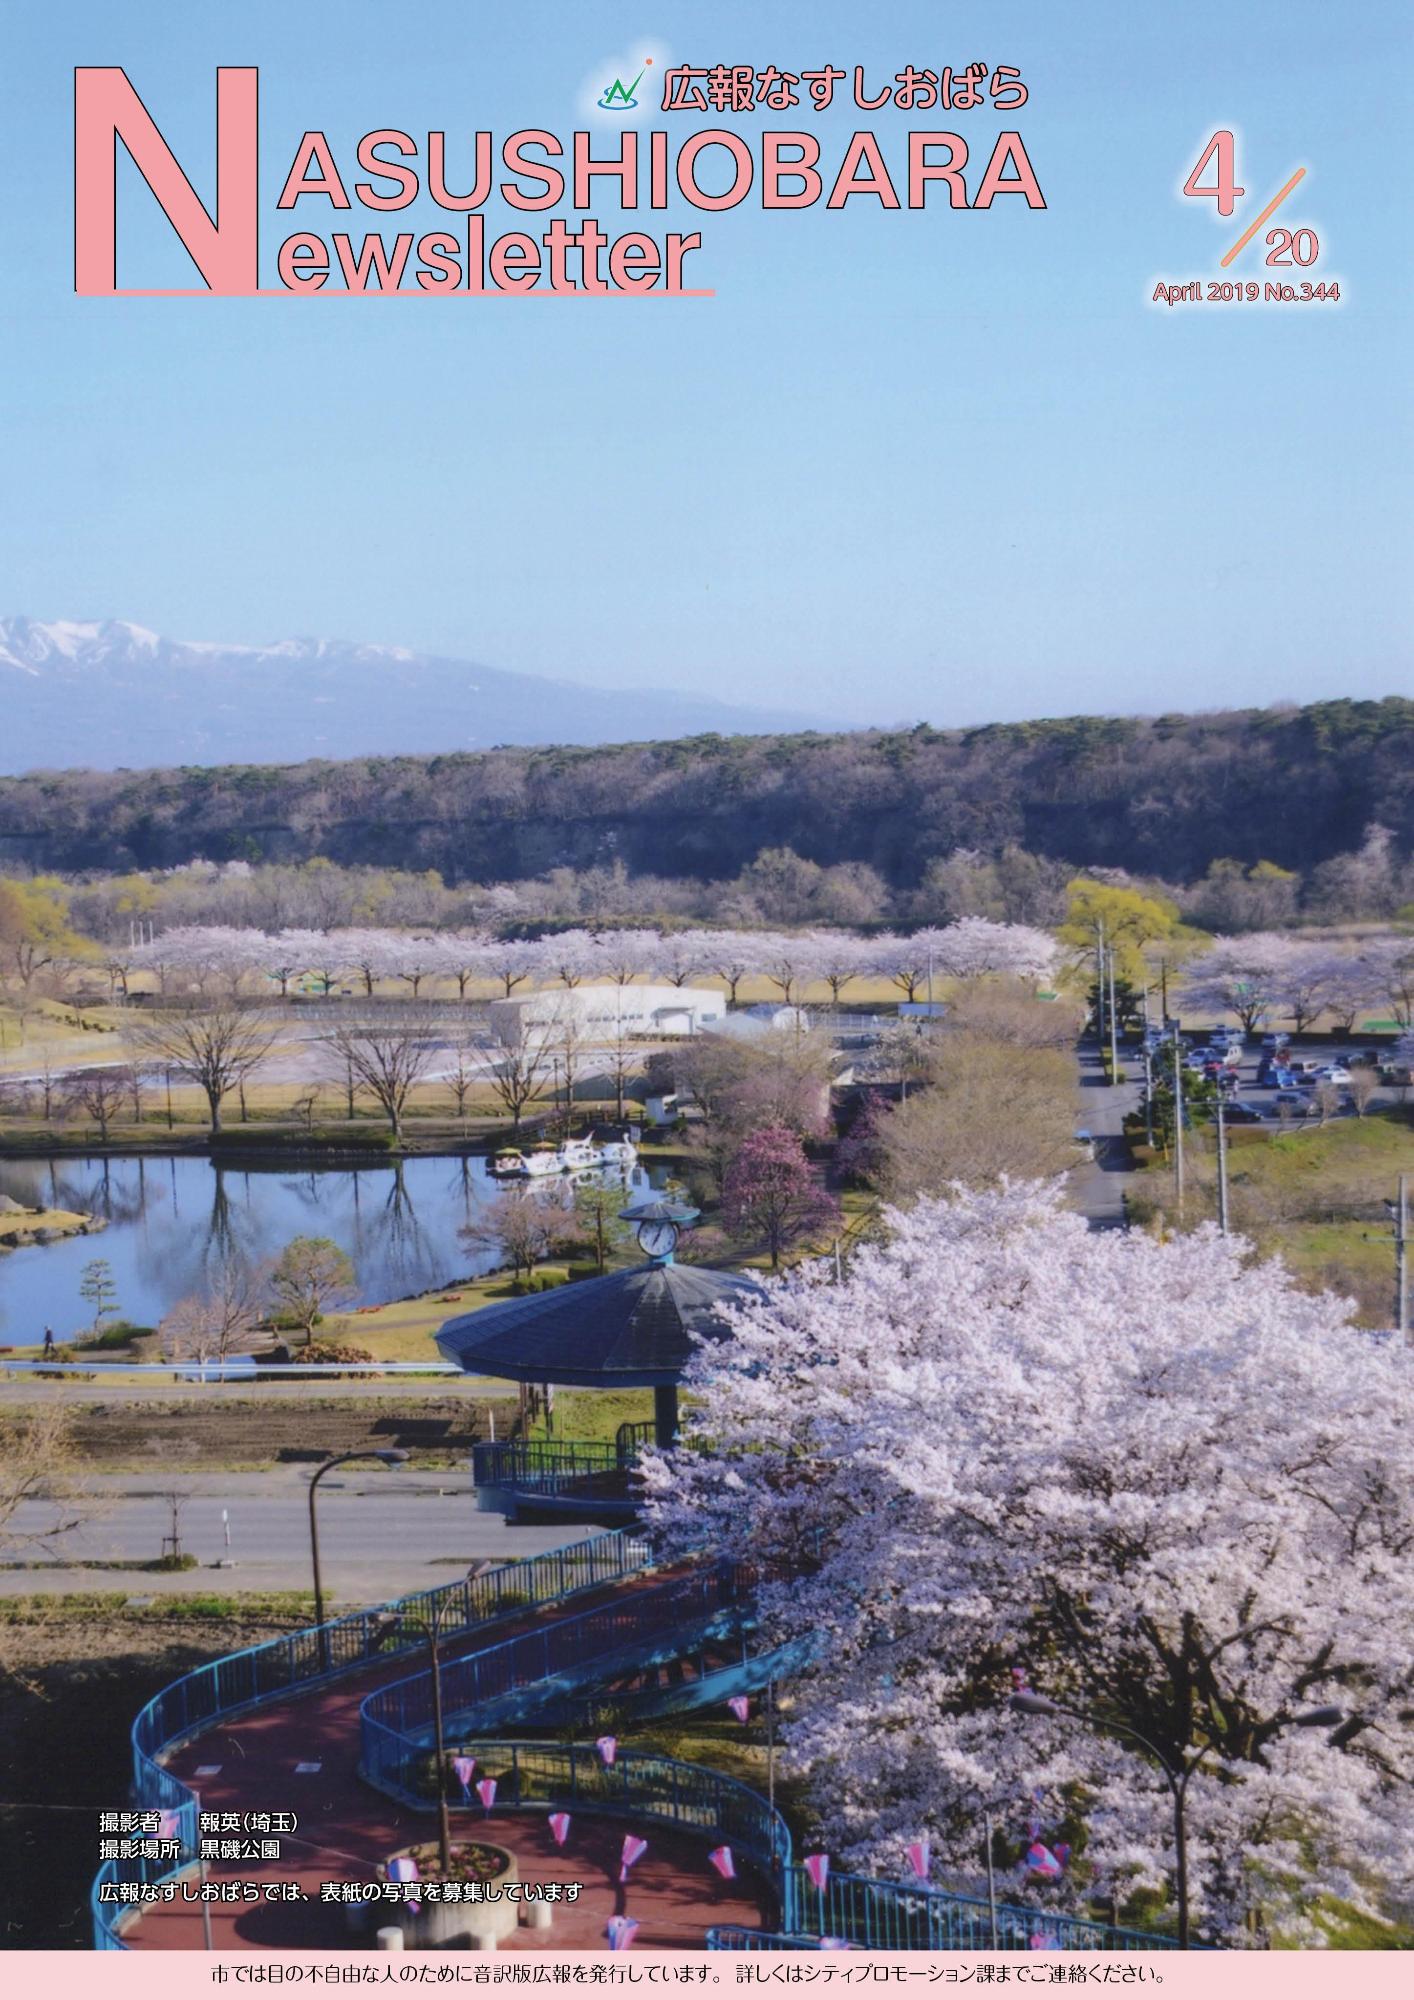 広報なすしおばら4月20日号表紙「黒磯公園から見た桜」